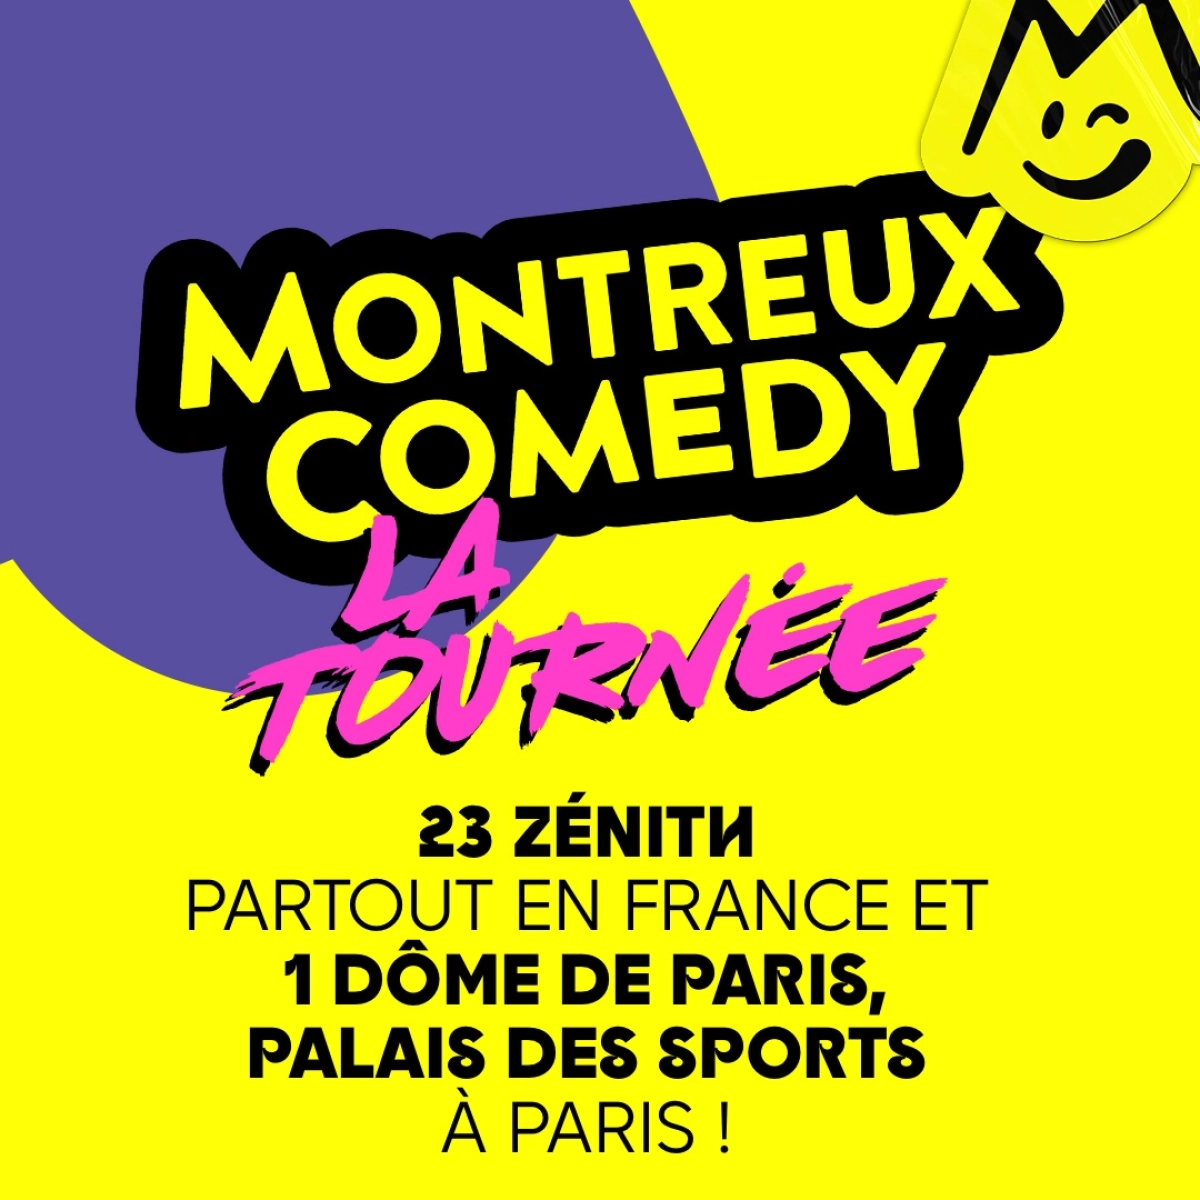 Montreux Comedy - La Tournee en Les Arenes de Metz Tickets